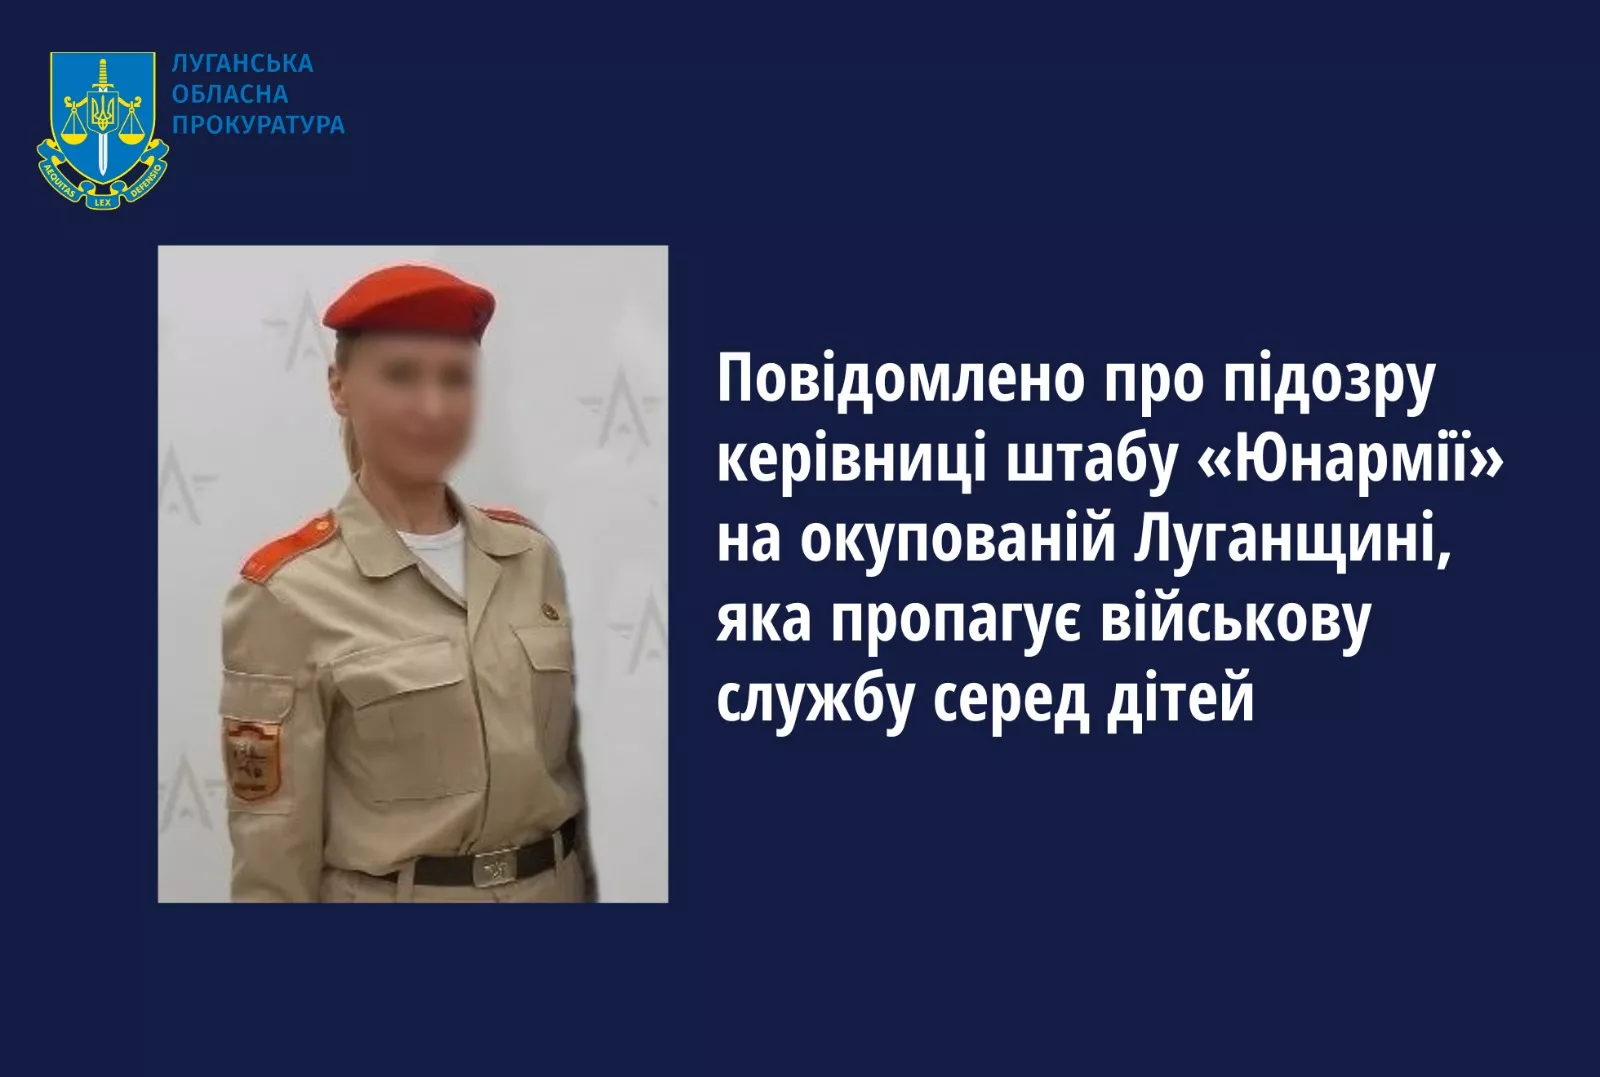 Керівниці підрозділу російської «Юнармії» в окупованих районах Луганщини повідомили про підозру через її колабораційну діяльність